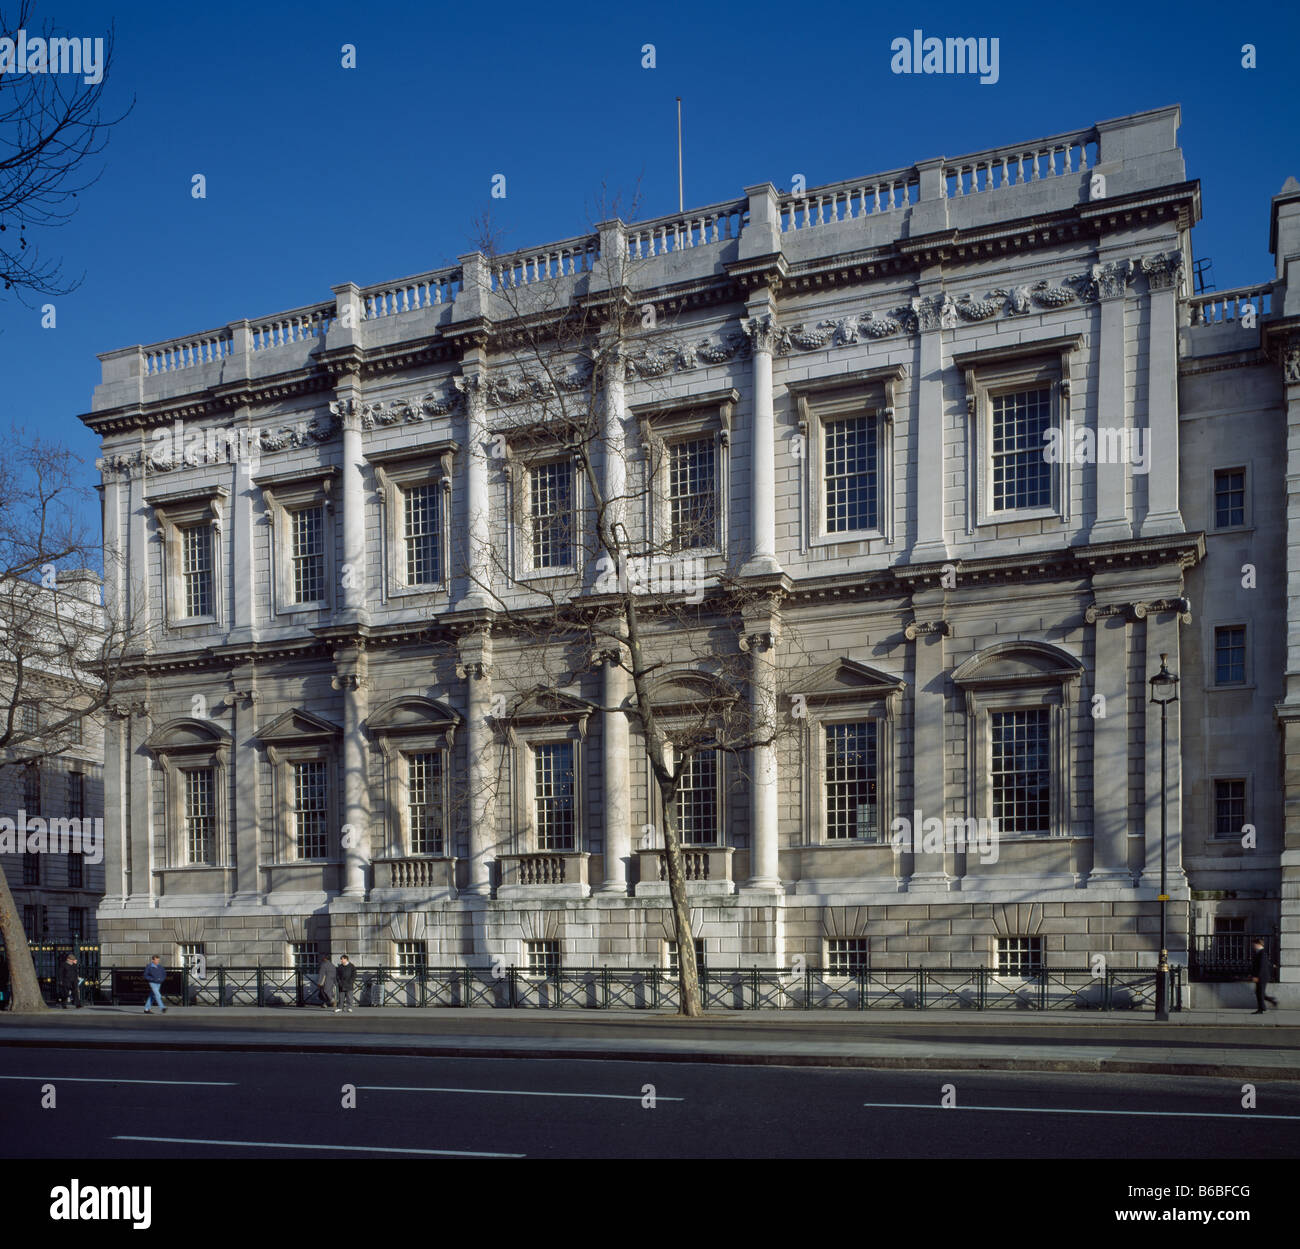 Inigo jones banqueting house Banque de photographies et d'images à haute  résolution - Alamy